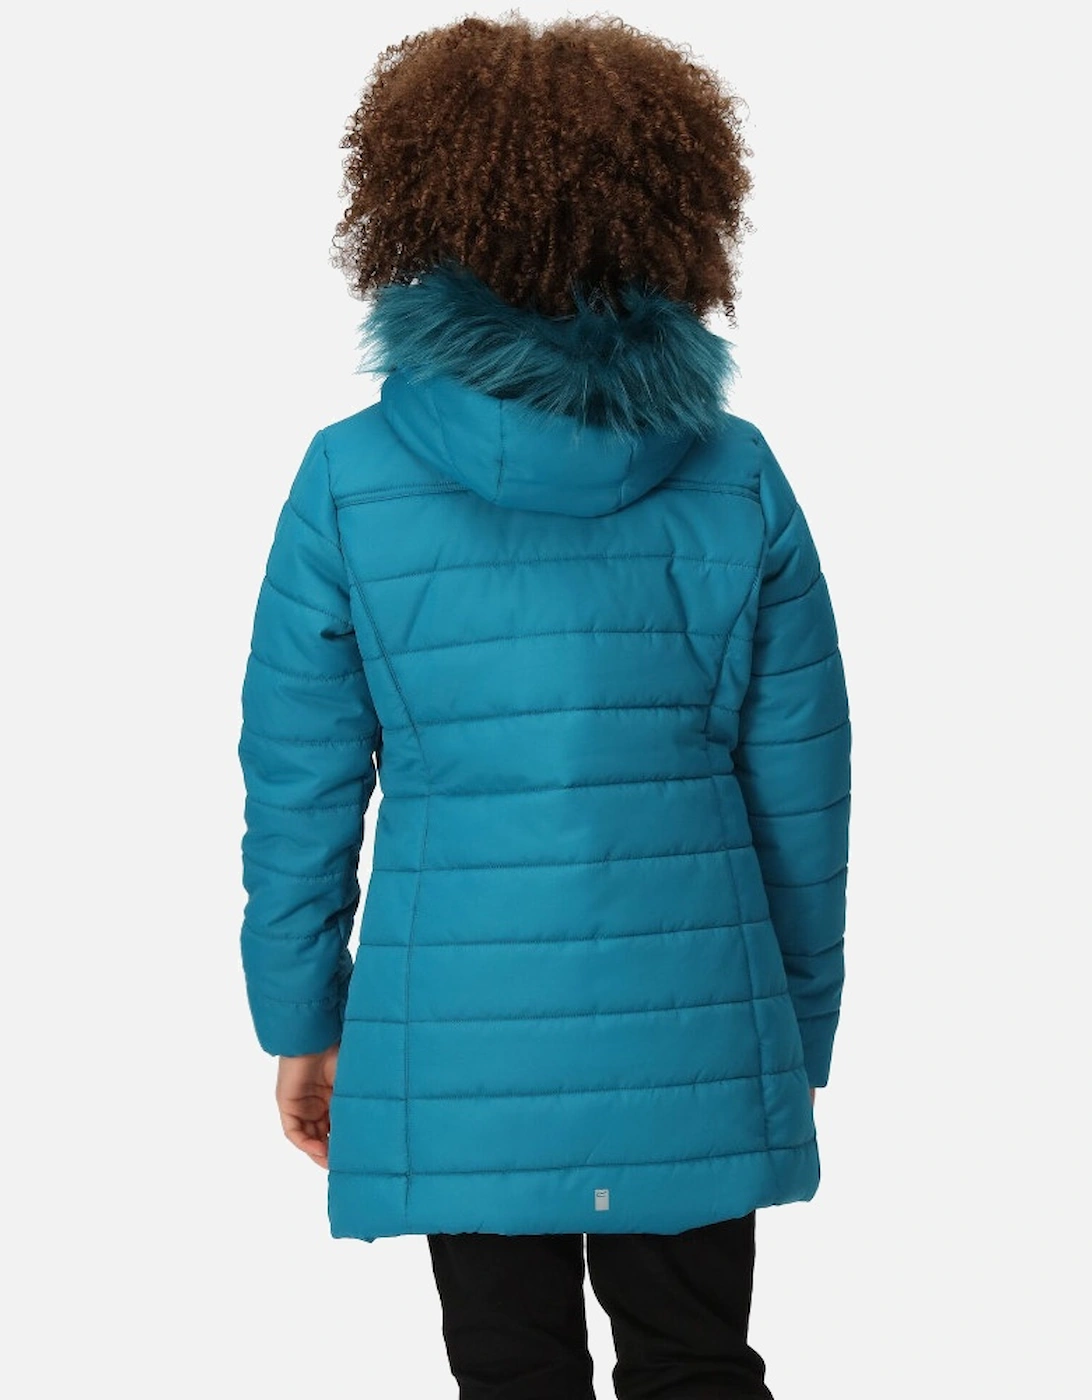 Girls Fabrizia Padded Warm Hooded Parka Jacket